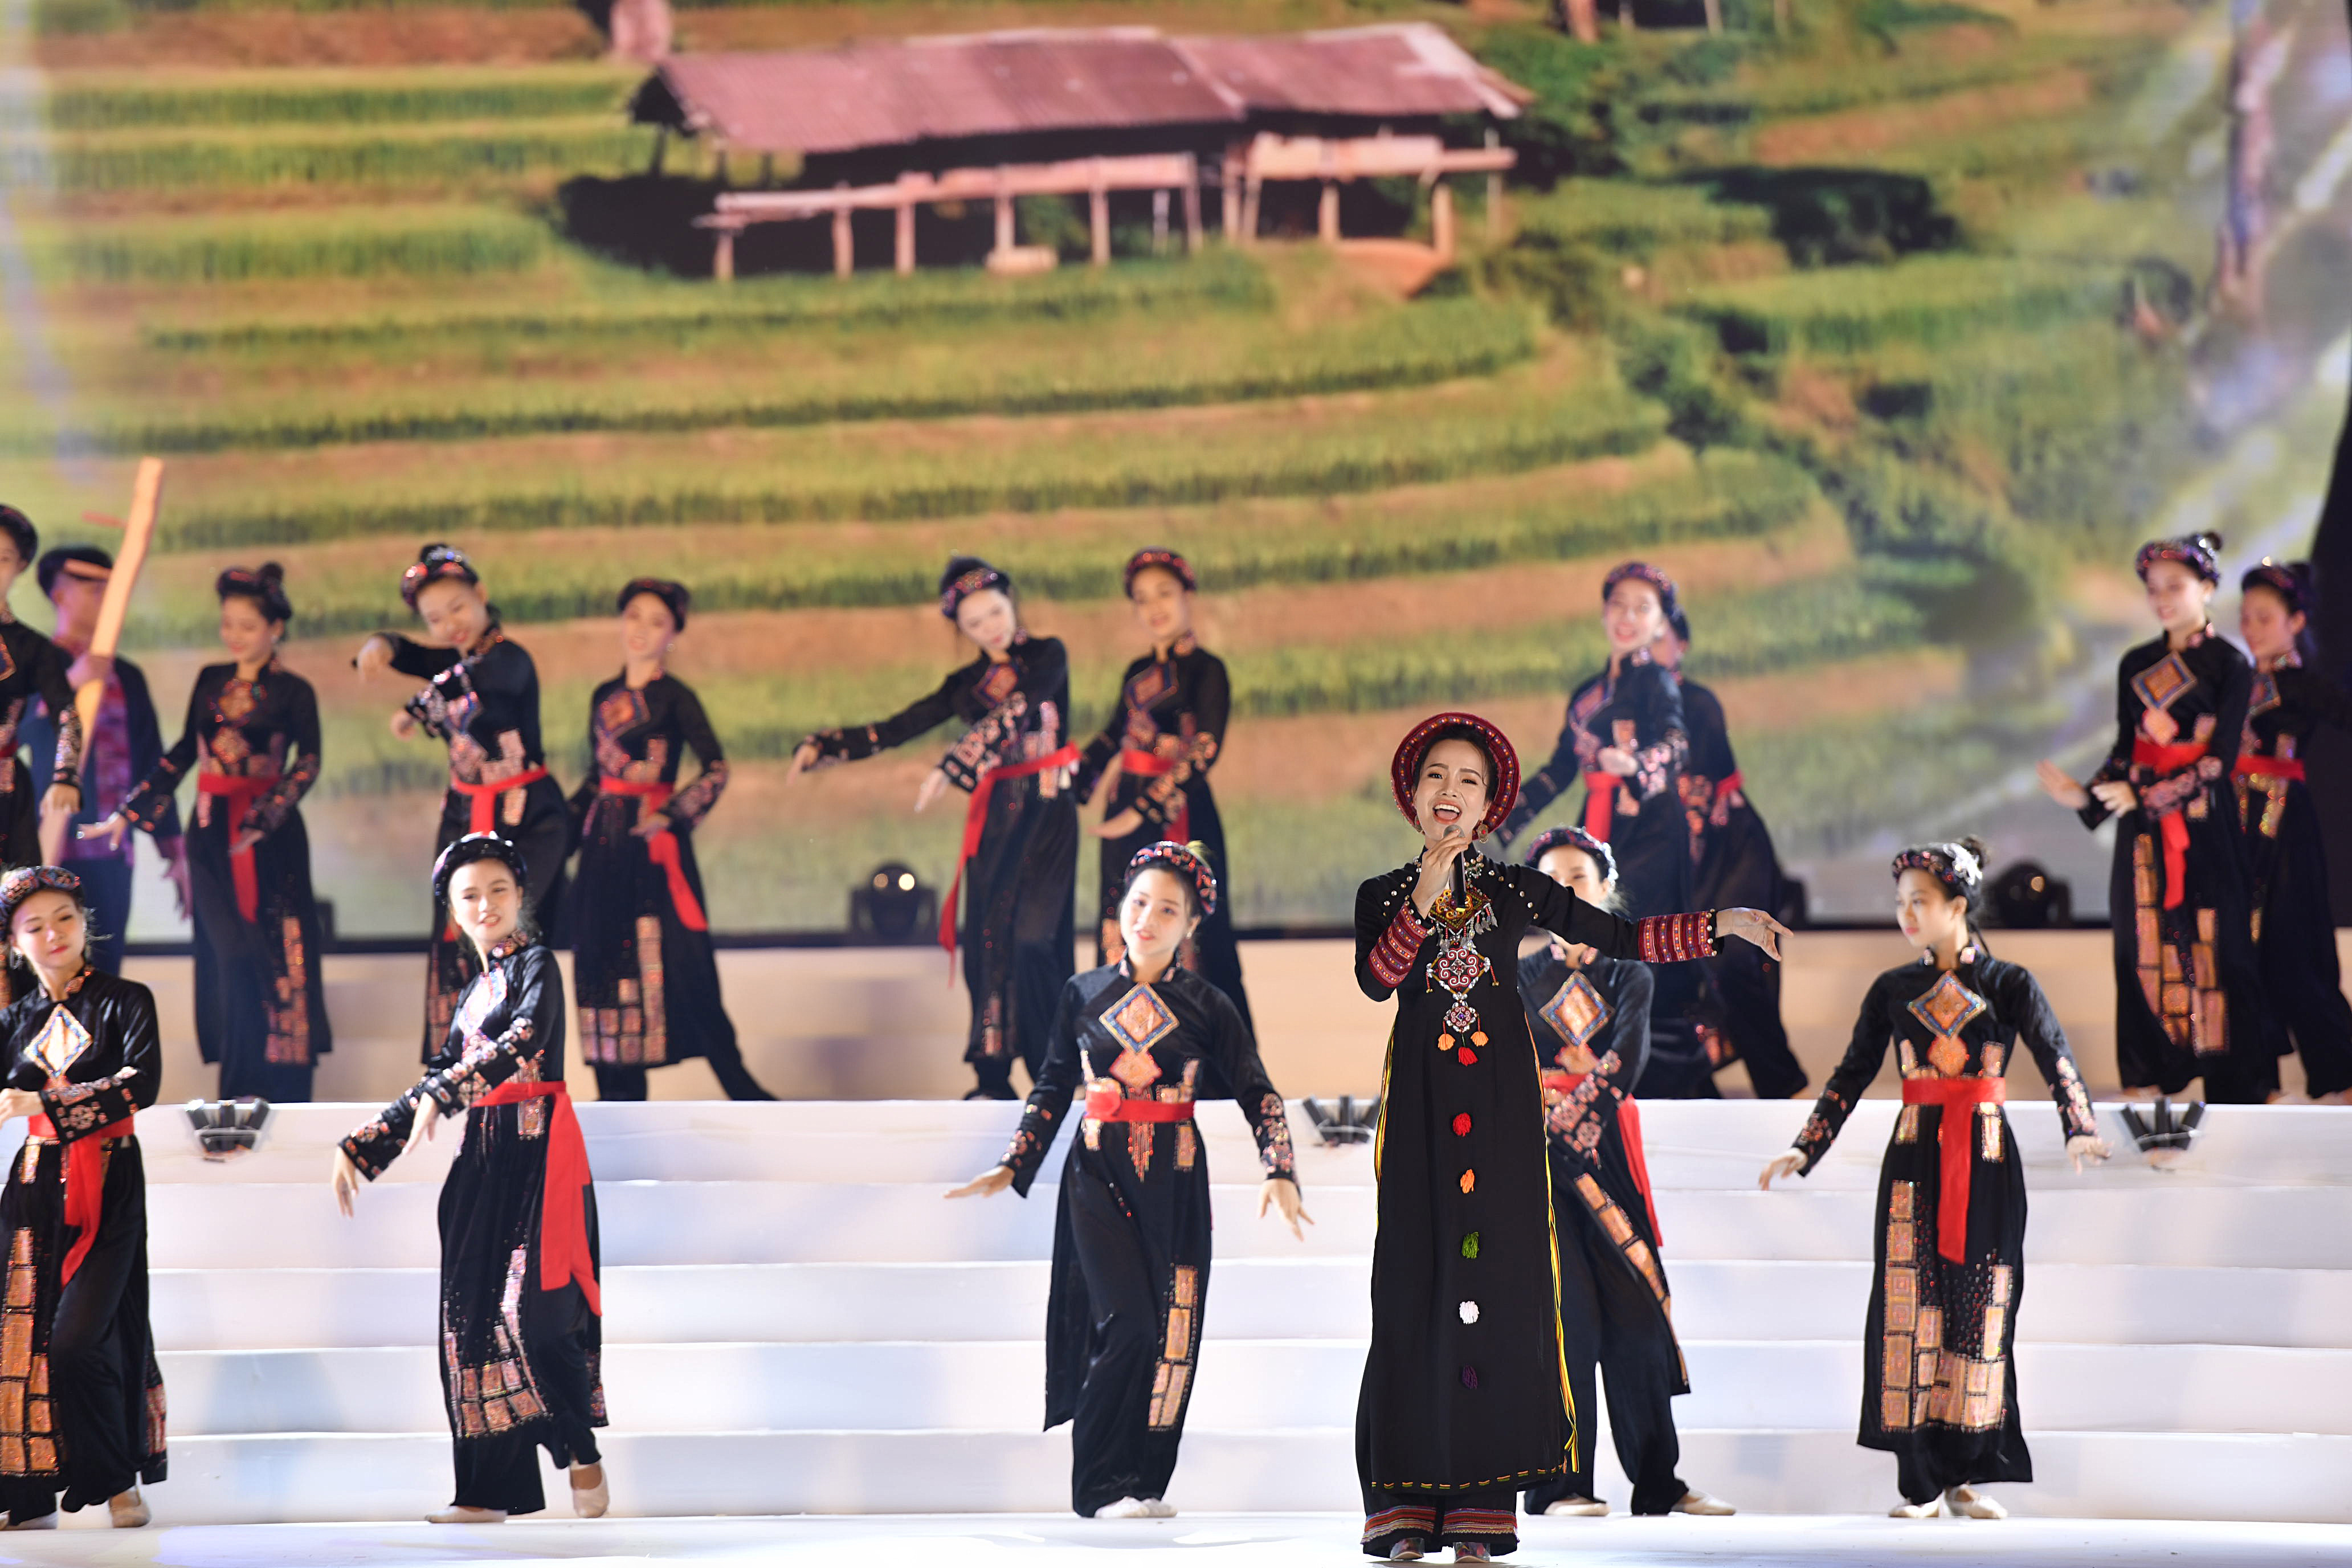 Sao Mai Sèn Hoàng Mỹ Lam cũng đã có phần thể hiện khá thú vị với ca khúc “Theo câu hát Sluông” ngợi ca tiếng đàn tính, điệu hát then nổi tiếng. 